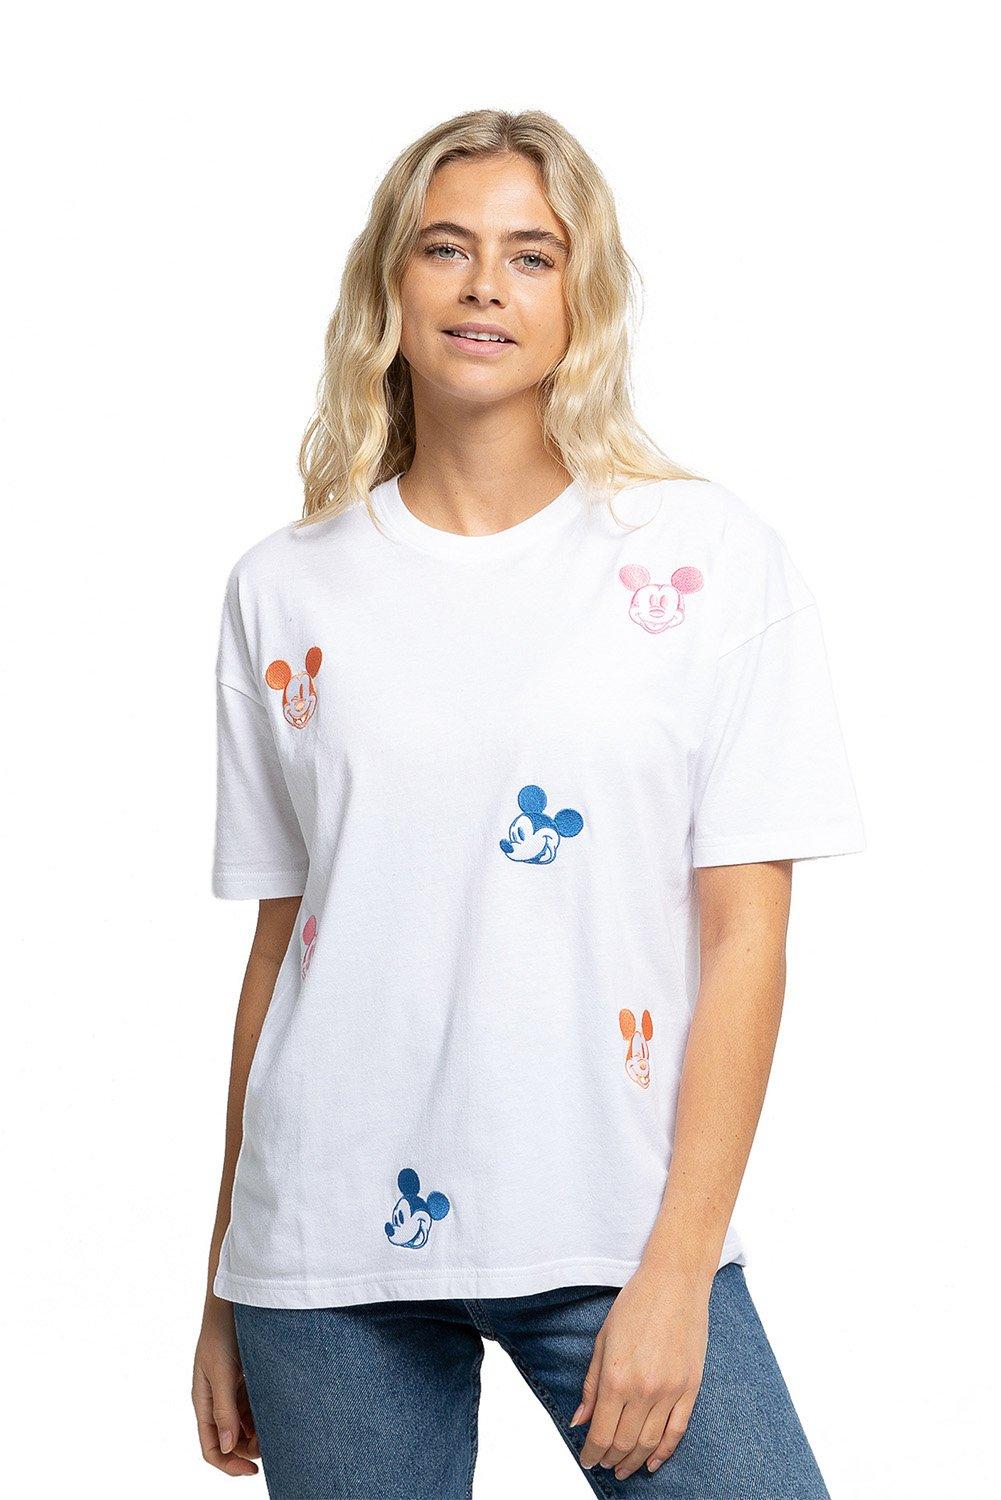 Женская футболка большого размера с надписью Mickey Mouse Heads Random Emb Disney, белый мужская футболка с принтом астронавта кавайная одежда повседневная корейская футболка большого размера